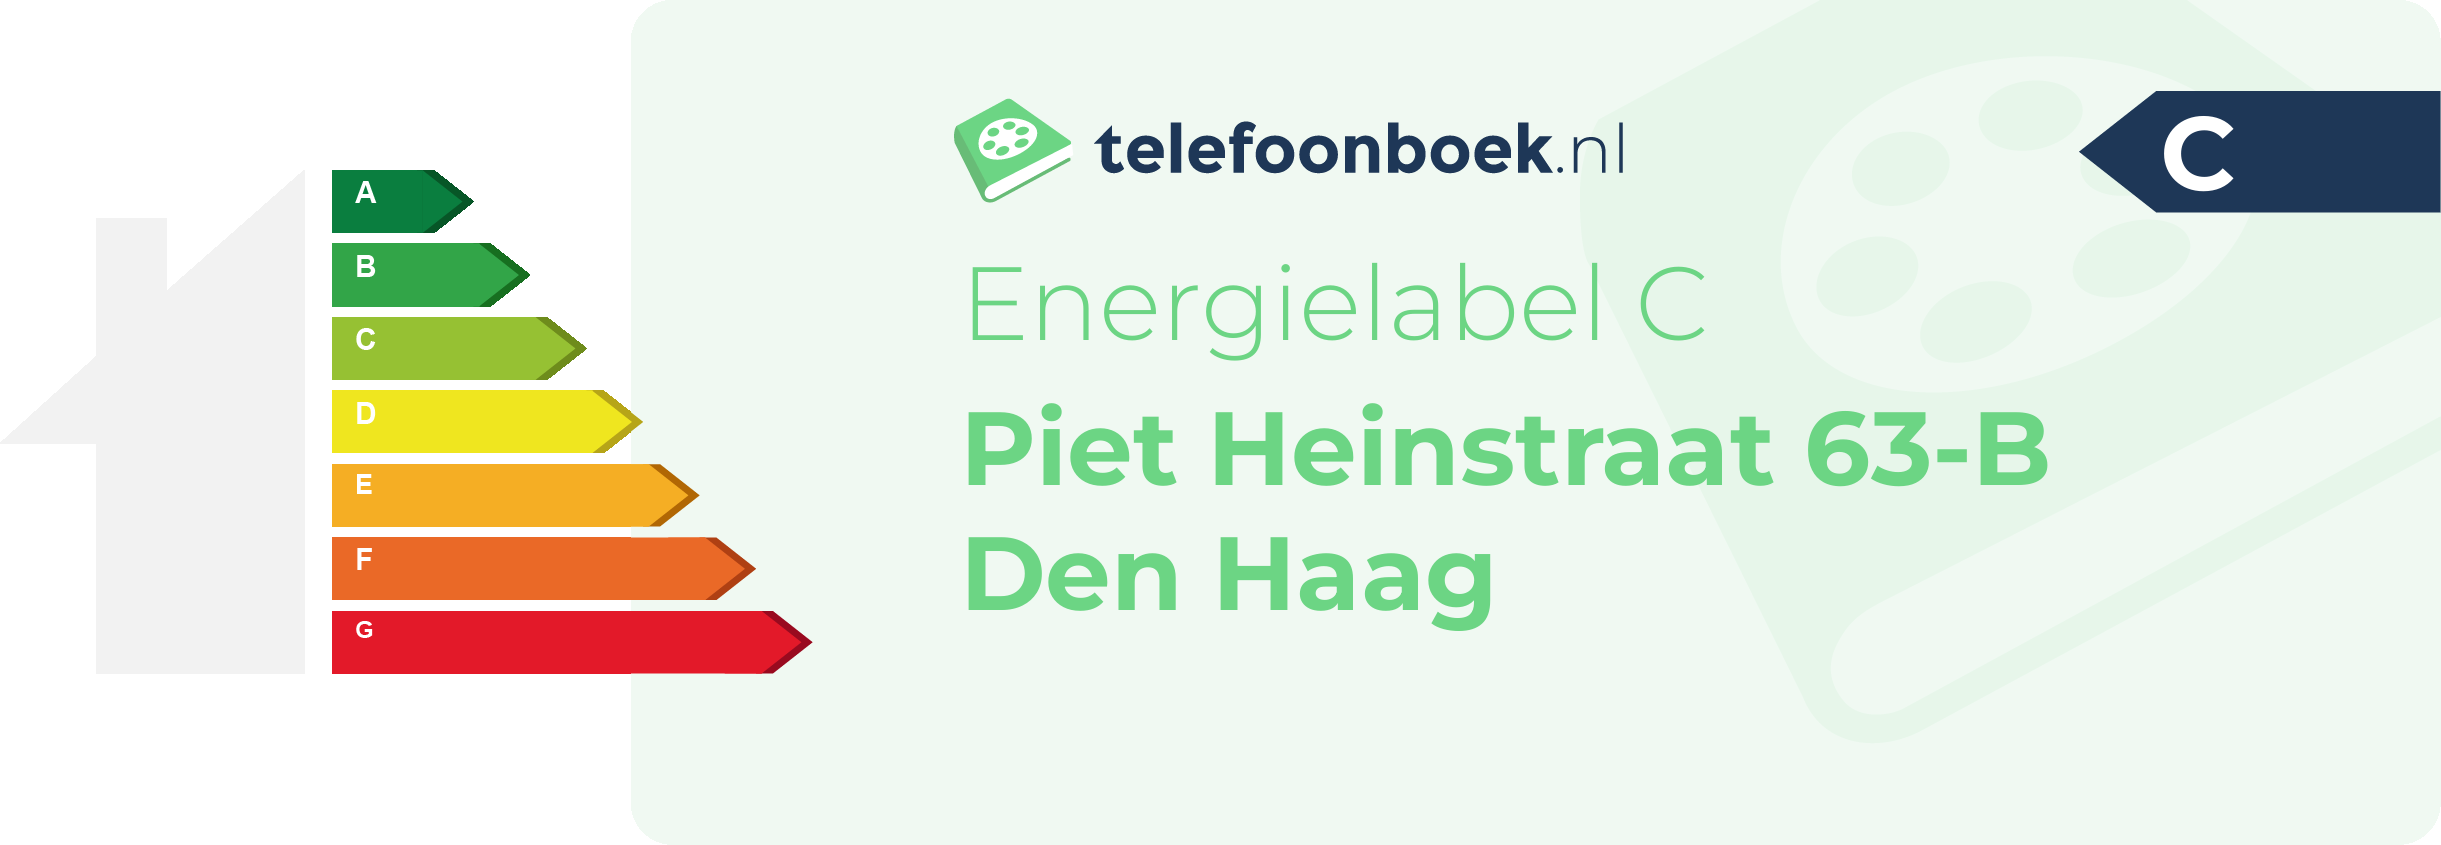 Energielabel Piet Heinstraat 63-B Den Haag